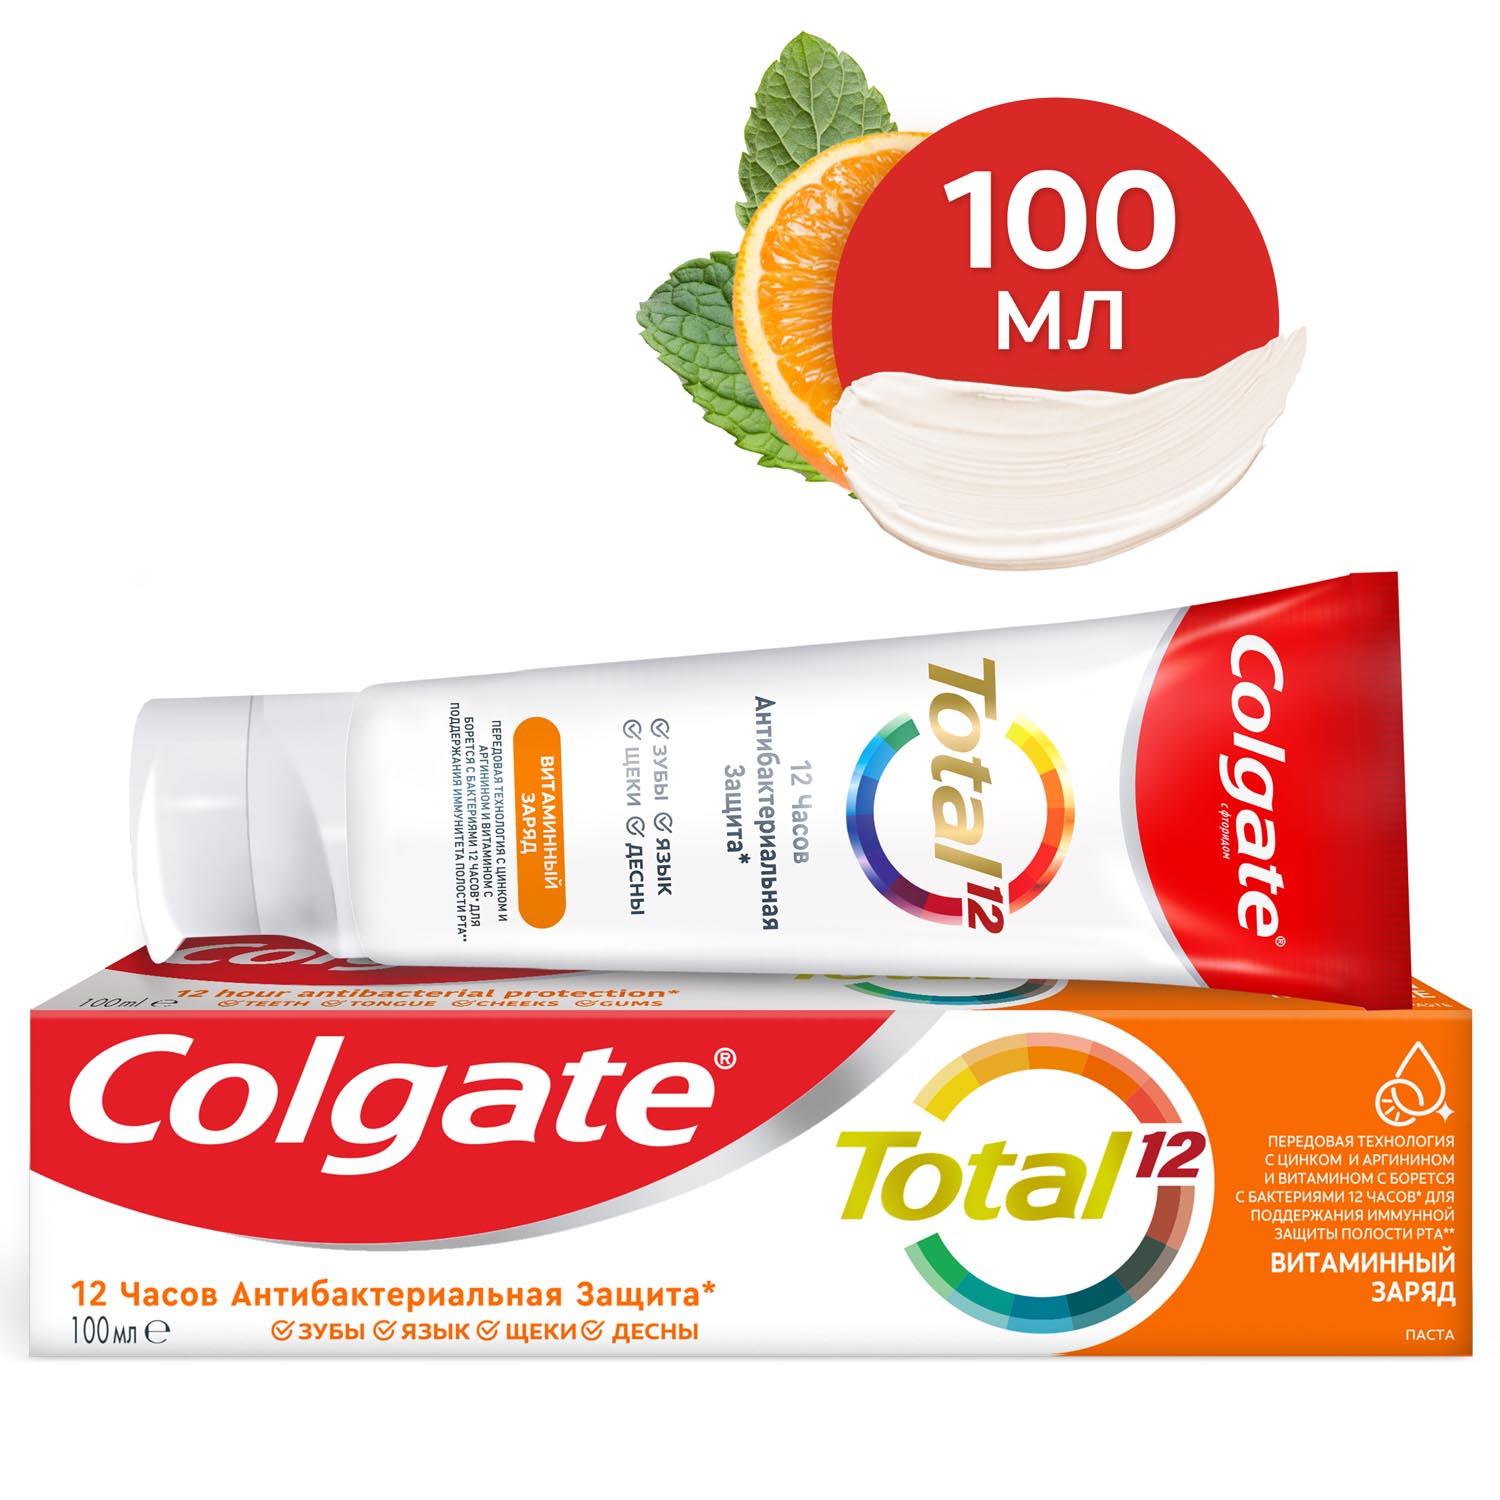 Зубная паста Colgate Total 12 Витаминный заряд с цинком и аргинином для комплексной антибактериальной защиты всей полости рта в течение 12 часов, 100 мл